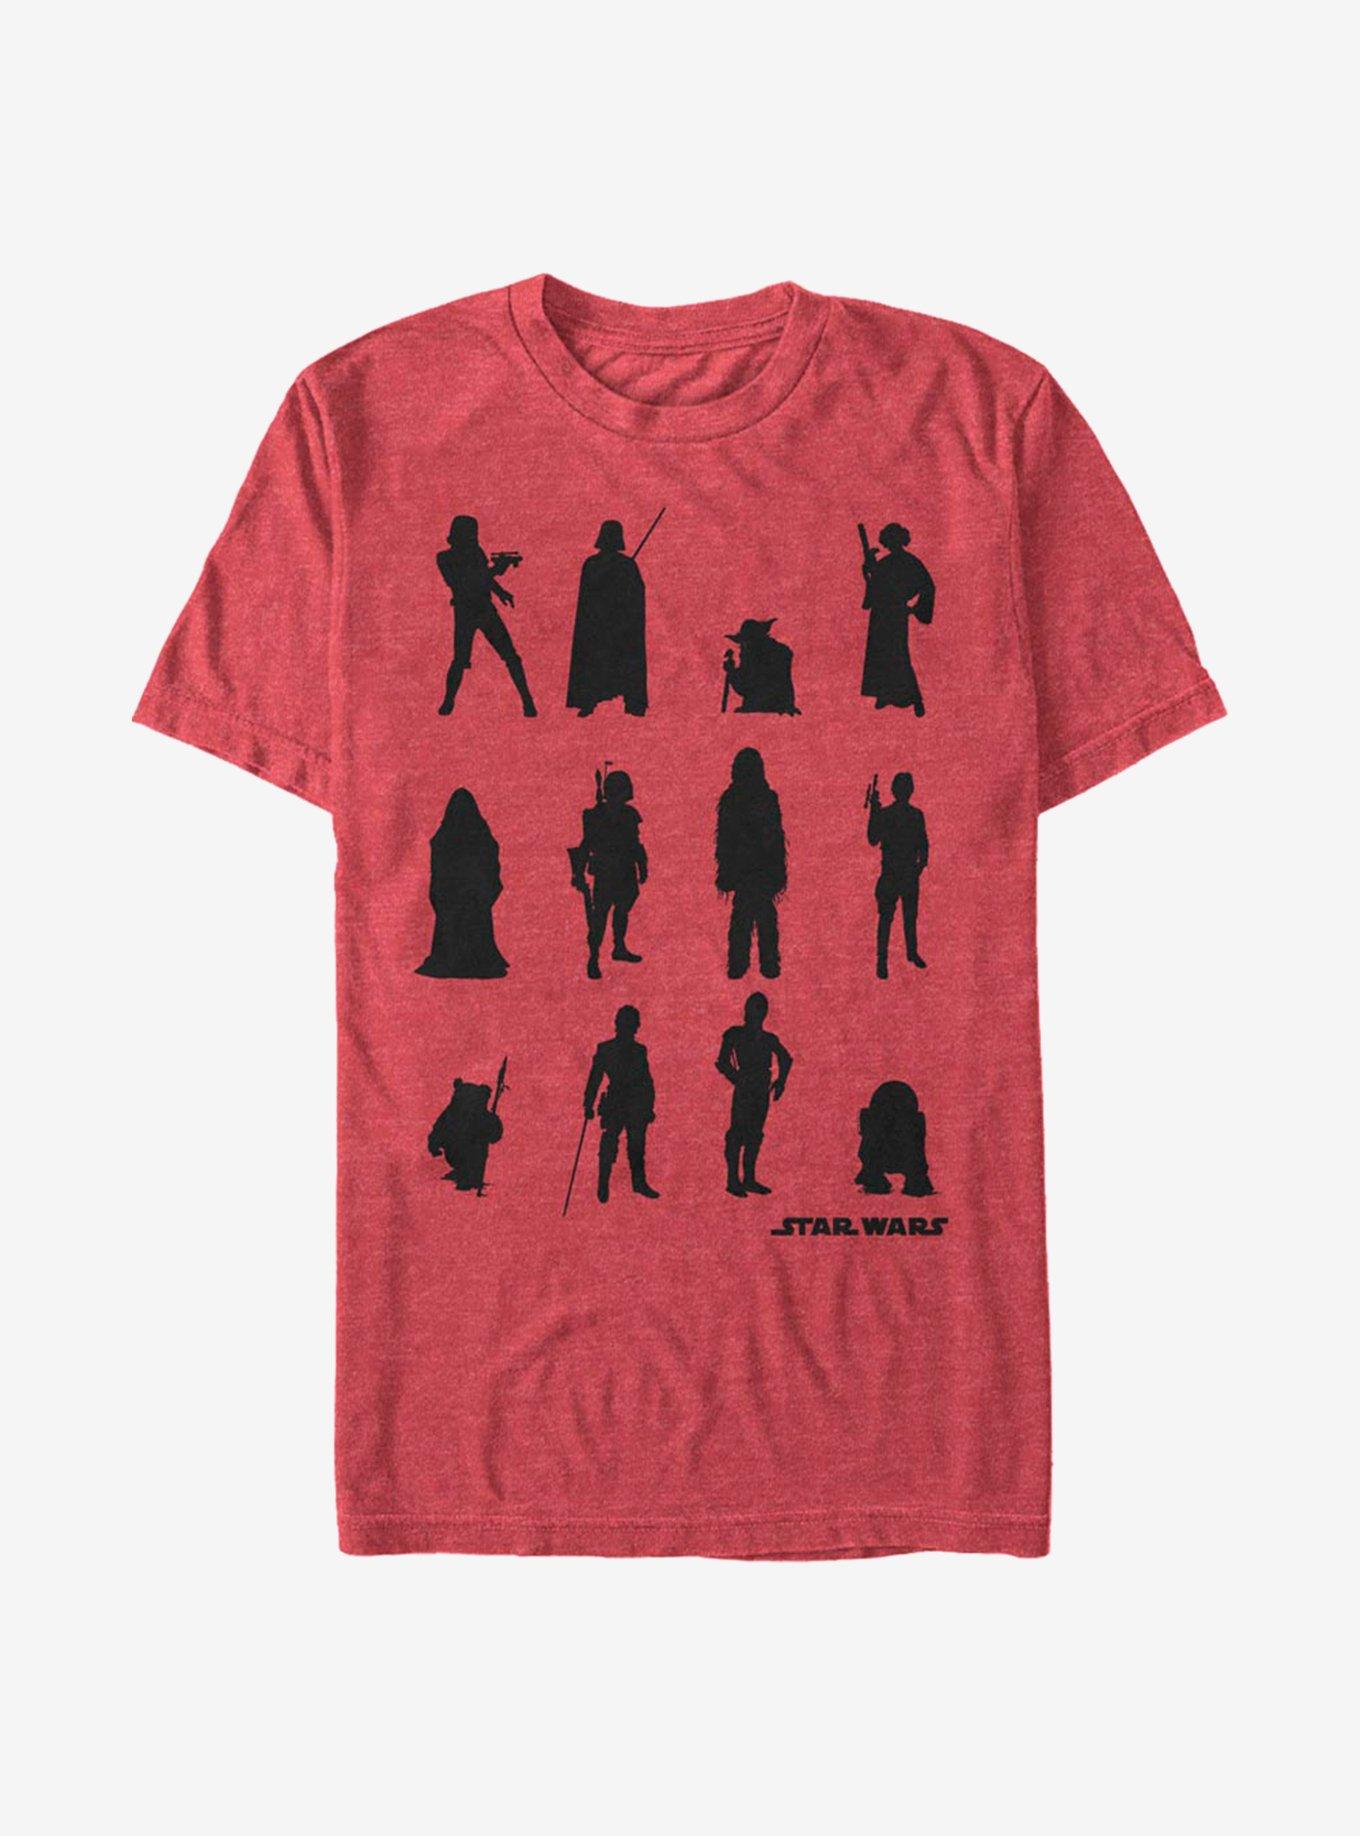 Star Wars Character Catalog T-Shirt